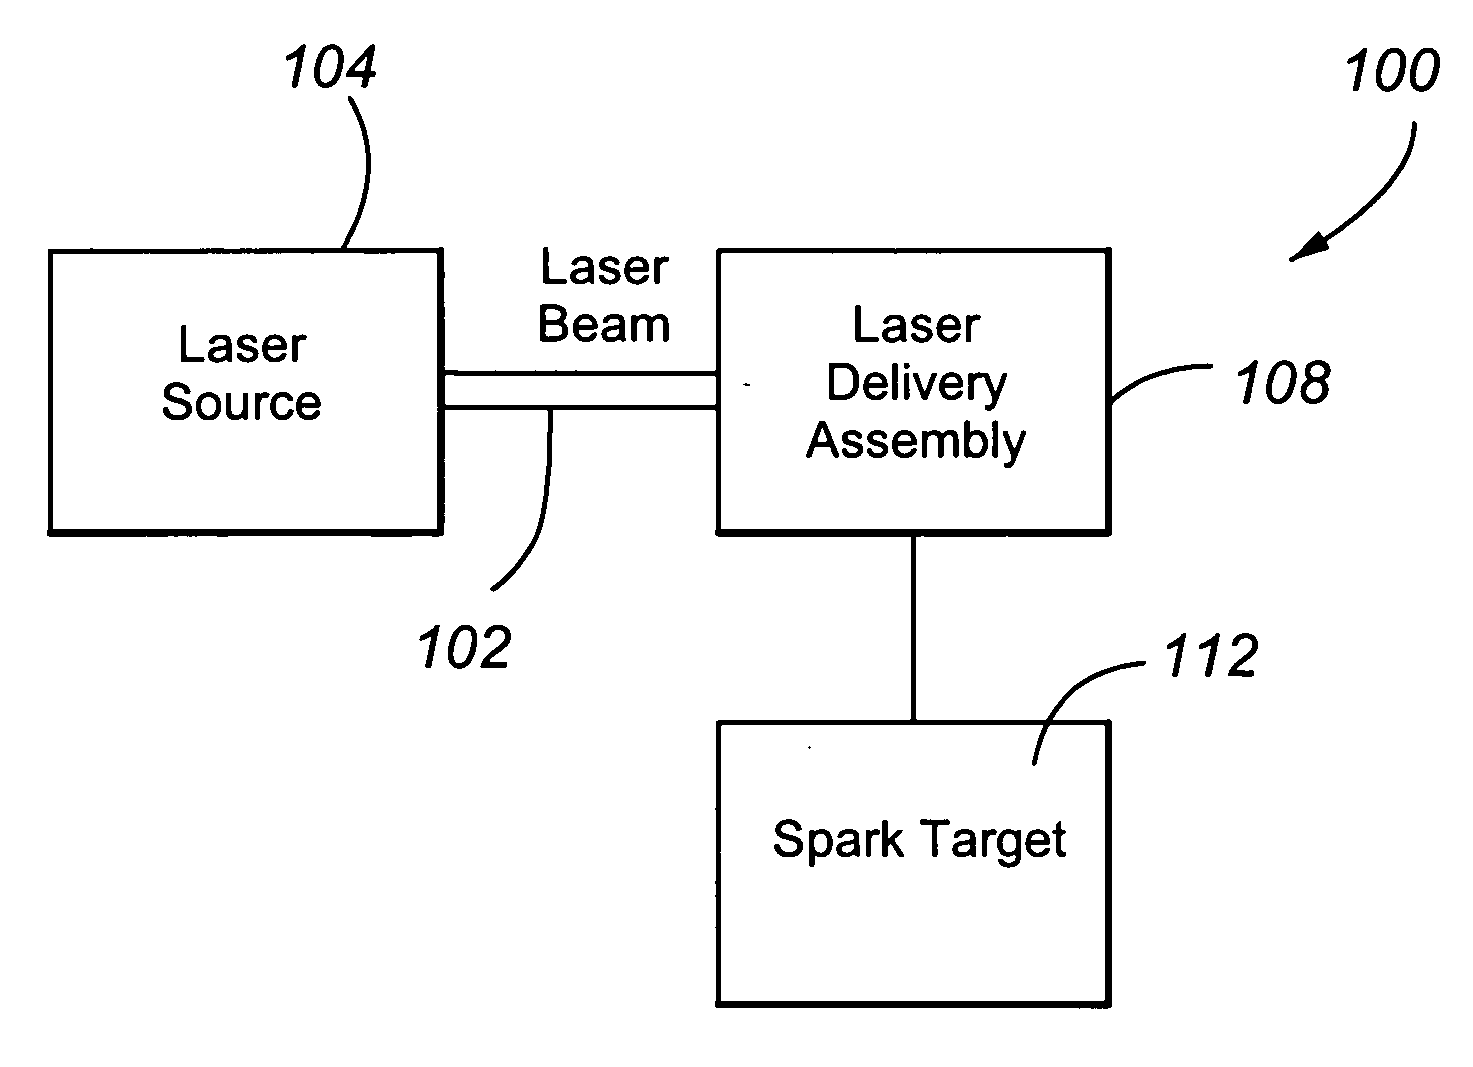 Fiber laser coupled optical spark delivery system